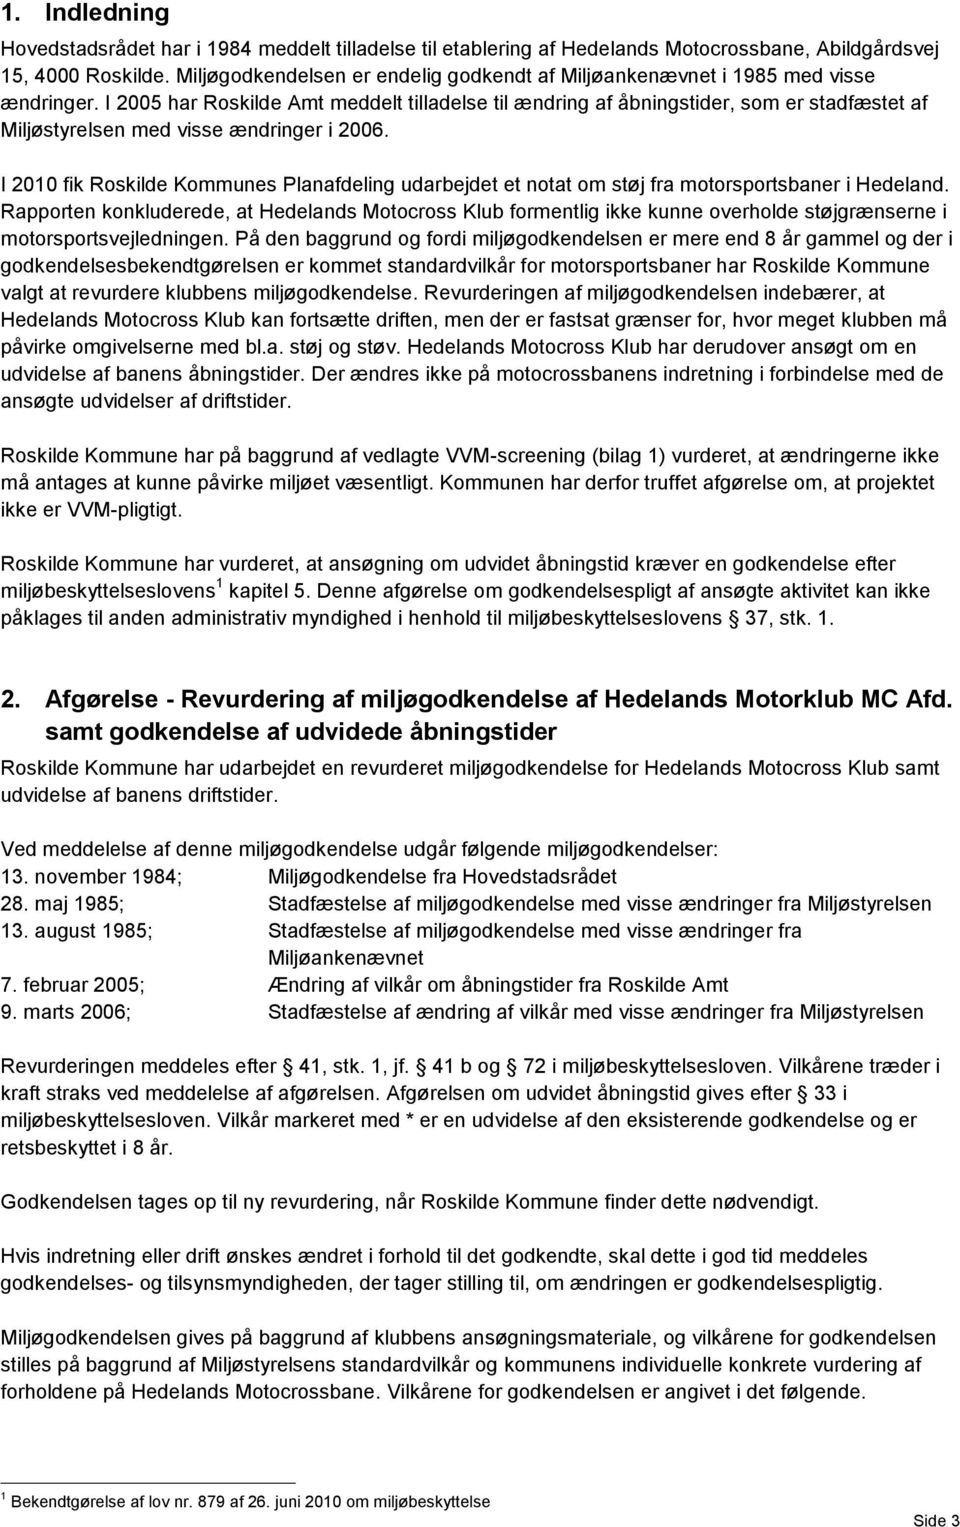 I 2005 har Roskilde Amt meddelt tilladelse til ændring af åbningstider, som er stadfæstet af Miljøstyrelsen med visse ændringer i 2006.